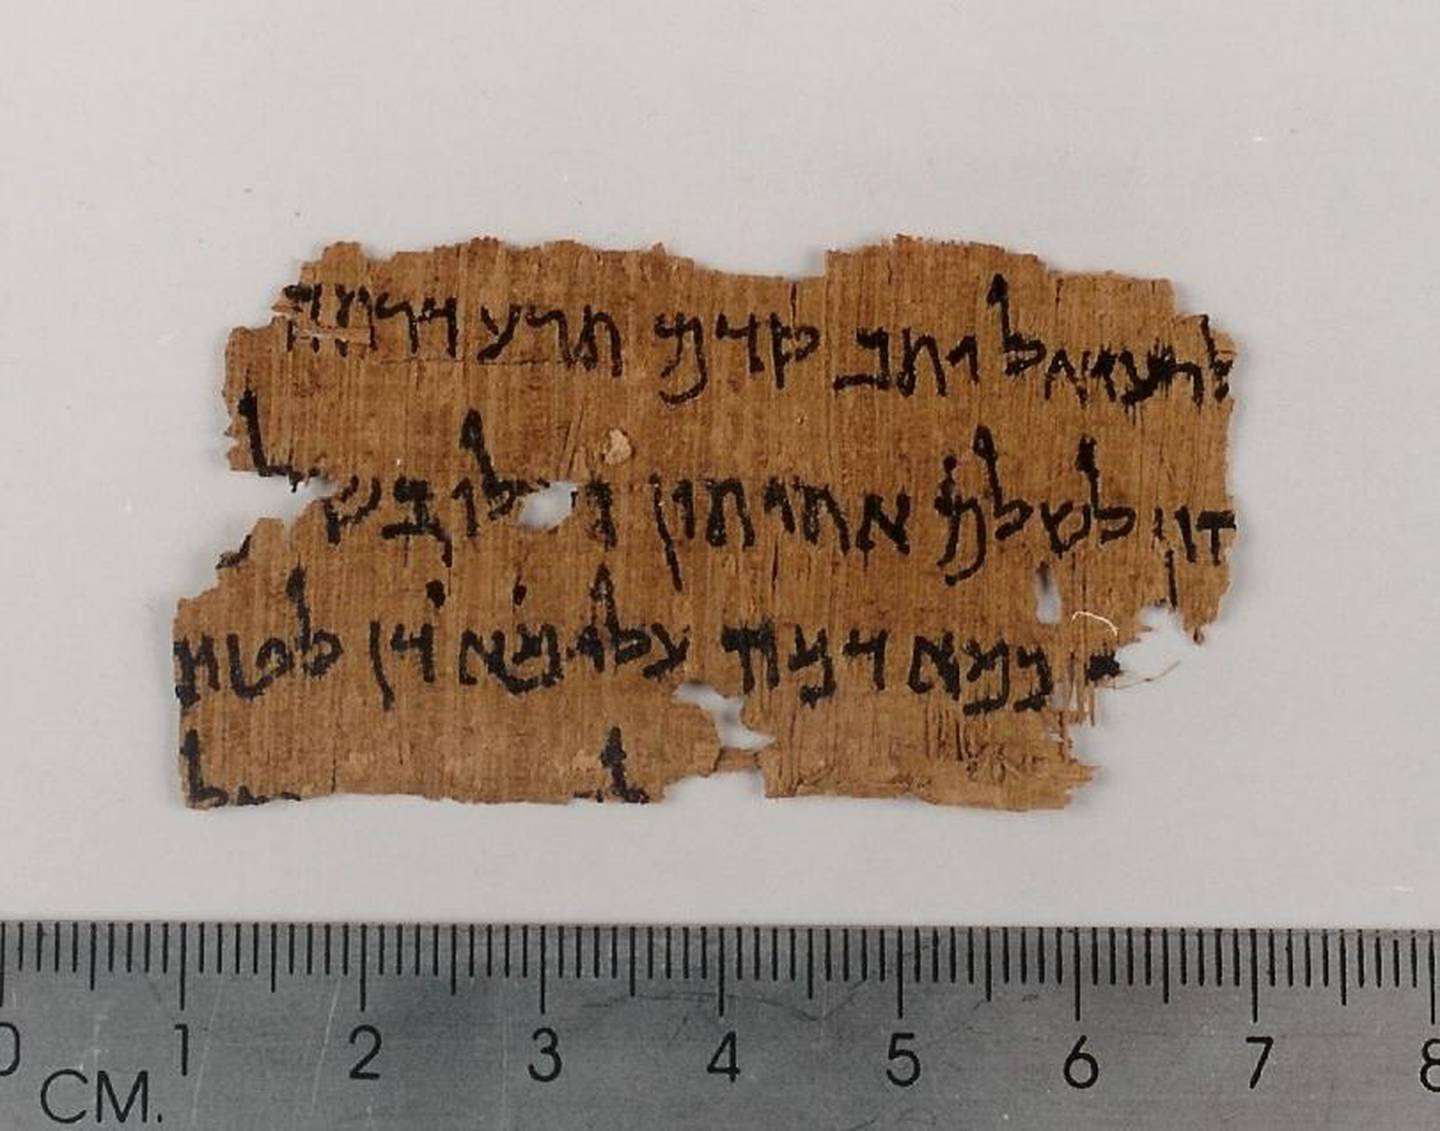 Kando-familien i Betlehem har solgt mange angivelige fragmenter fra Dødehavsrullene, også til den norske samleren Martin Schøyen. Som første avis har Vårt Land fått tilgang til et bilde av et upublisert papyrusfragment av Tobit 7,1-3, som fortsatt er i Kando-familiens eie.